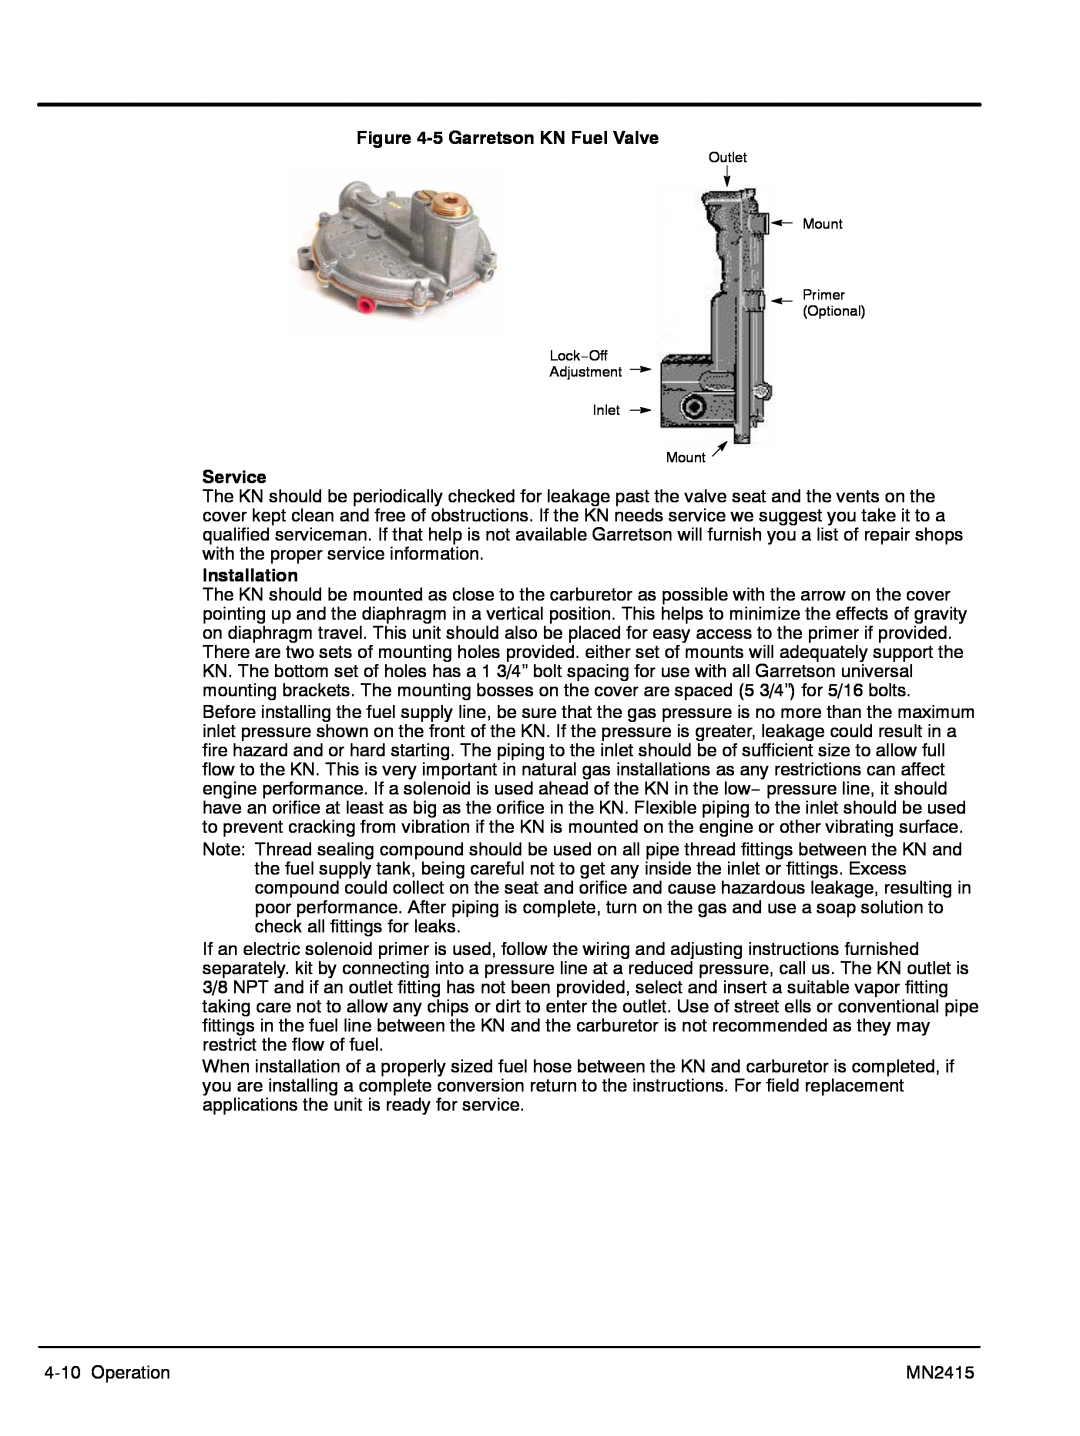 Baldor AE11 5 Garretson KN Fuel Valve, Service, Installation, Outlet Mount Primer Optional Lock−Off Adjustment Inlet Mount 